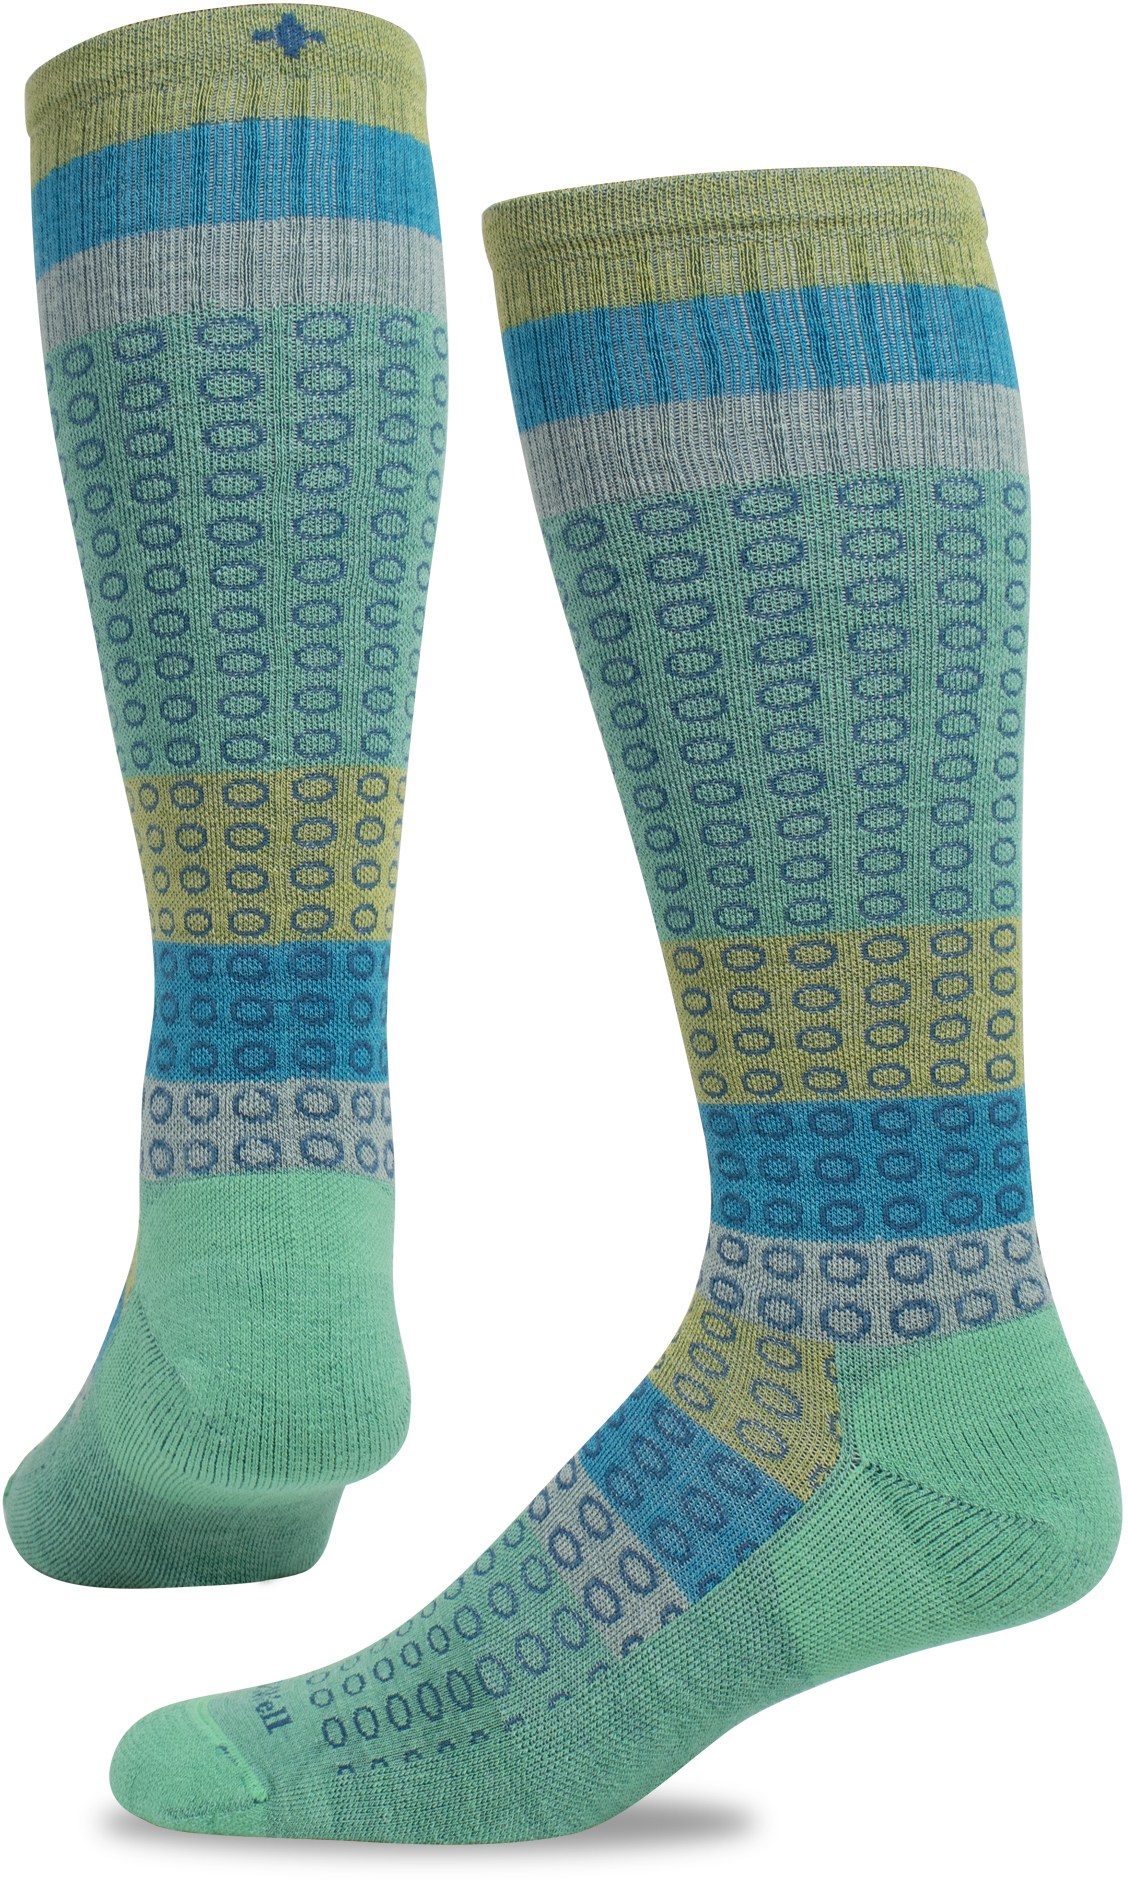 Компрессионные носки полного круга, широкие по размеру икры, женские Sockwell, зеленый